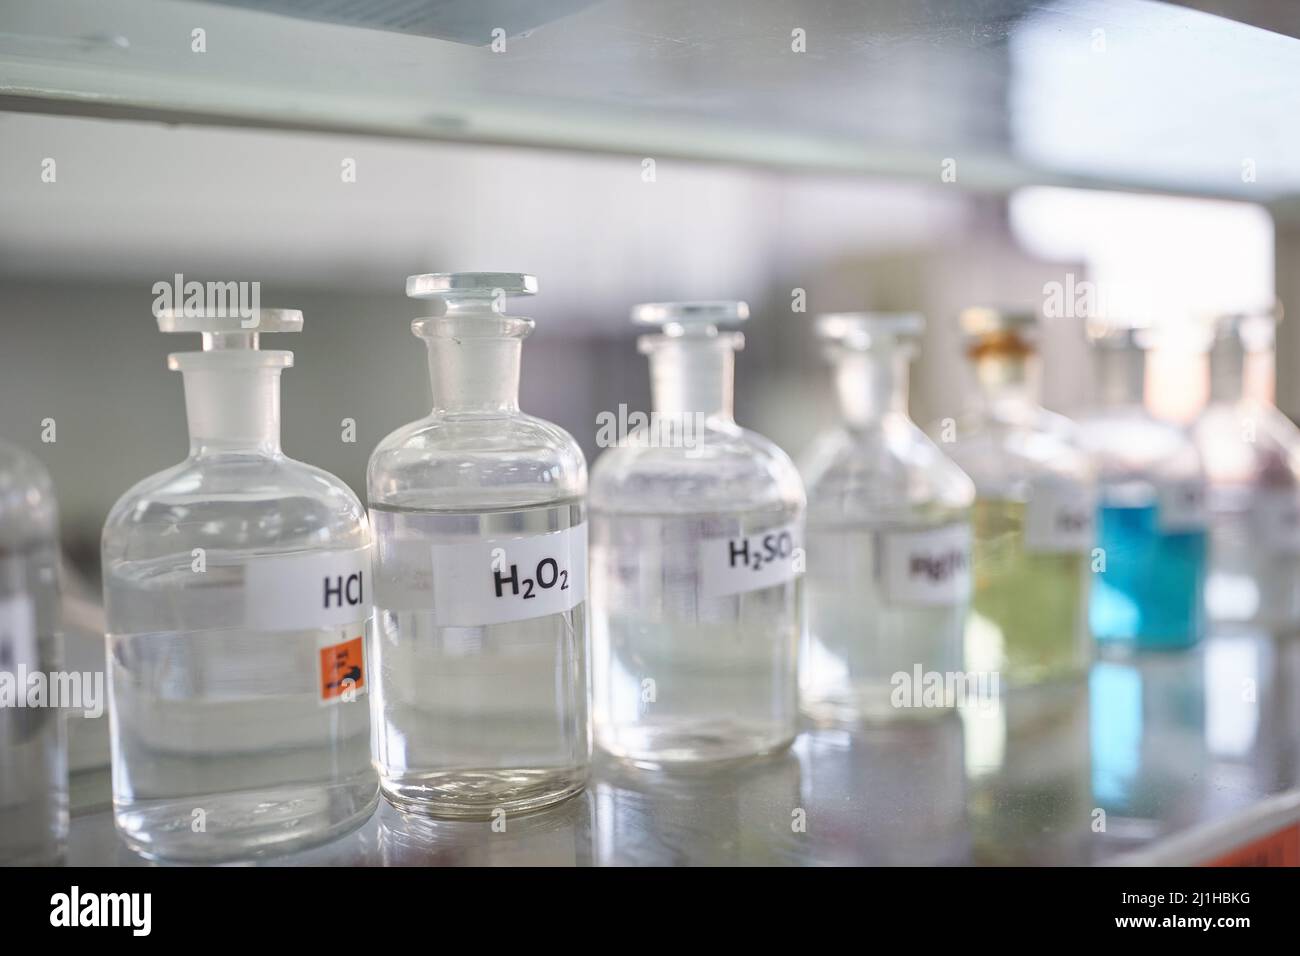 Chemikalienbehälter auf dem Regal in einer sterilen Laborumgebung. Chemie, Labor, Chemikalien Stockfoto